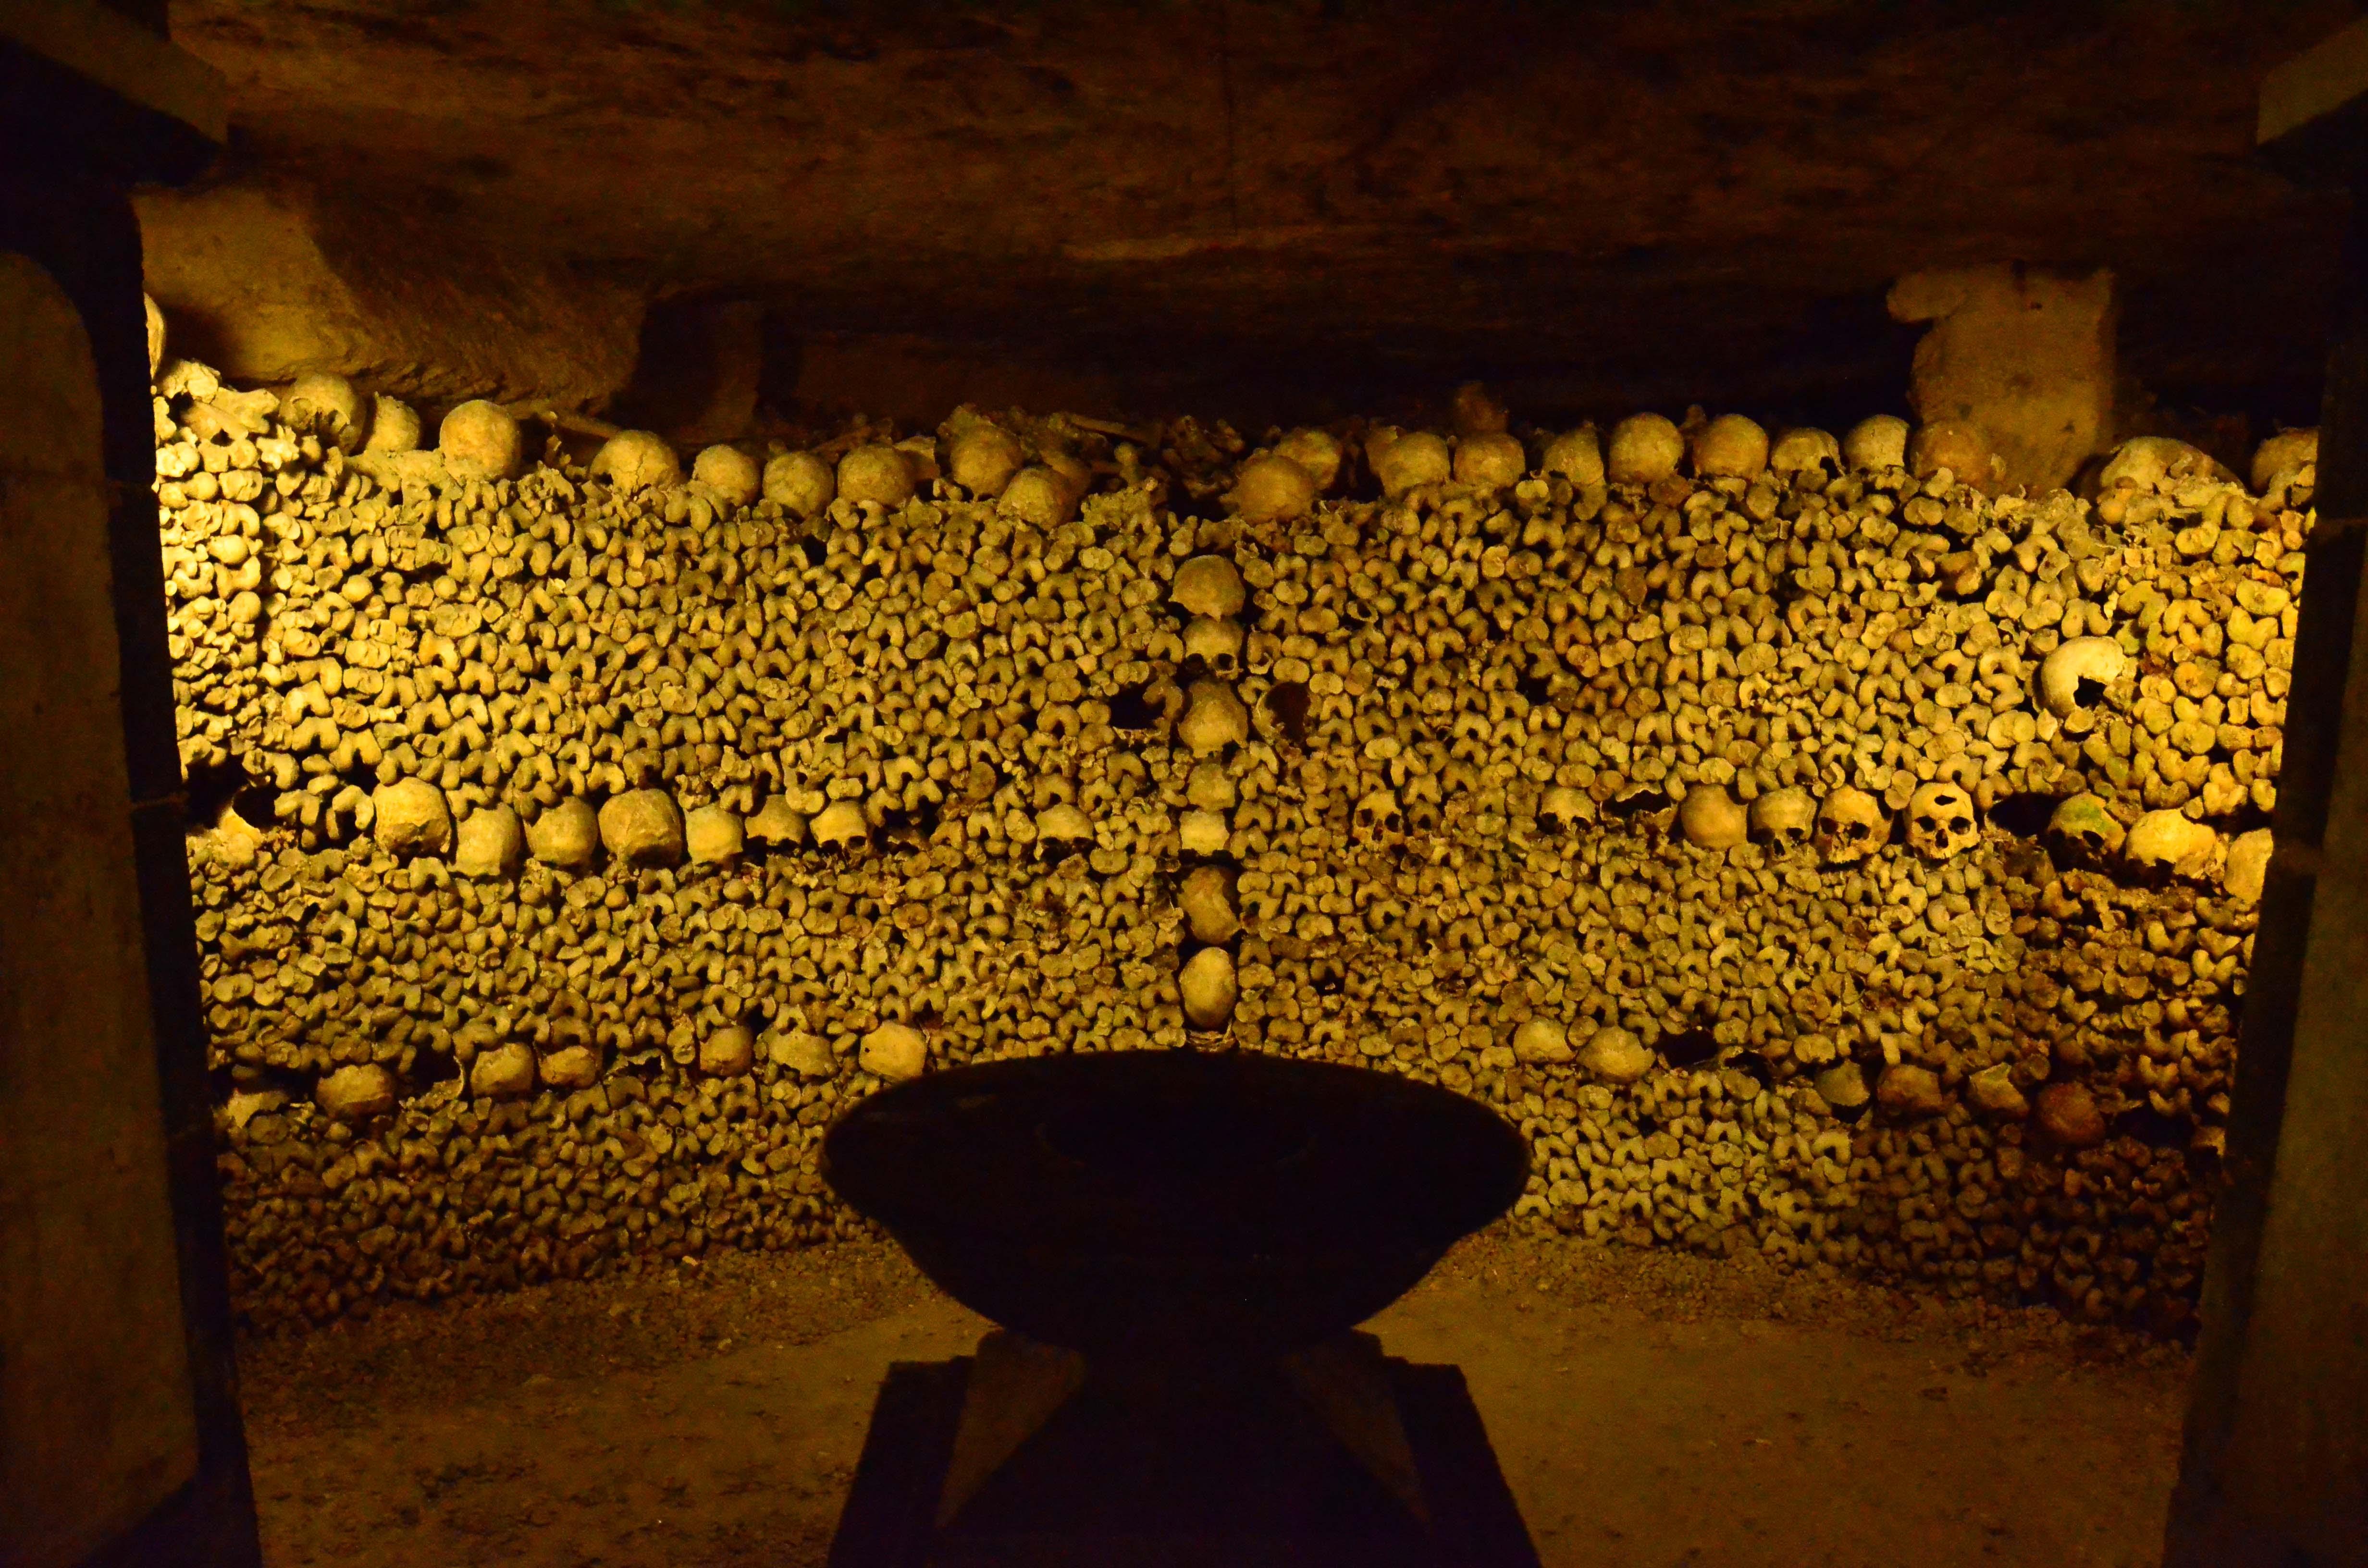 去过巴黎的地下墓场(catacombs)后,什么感觉?